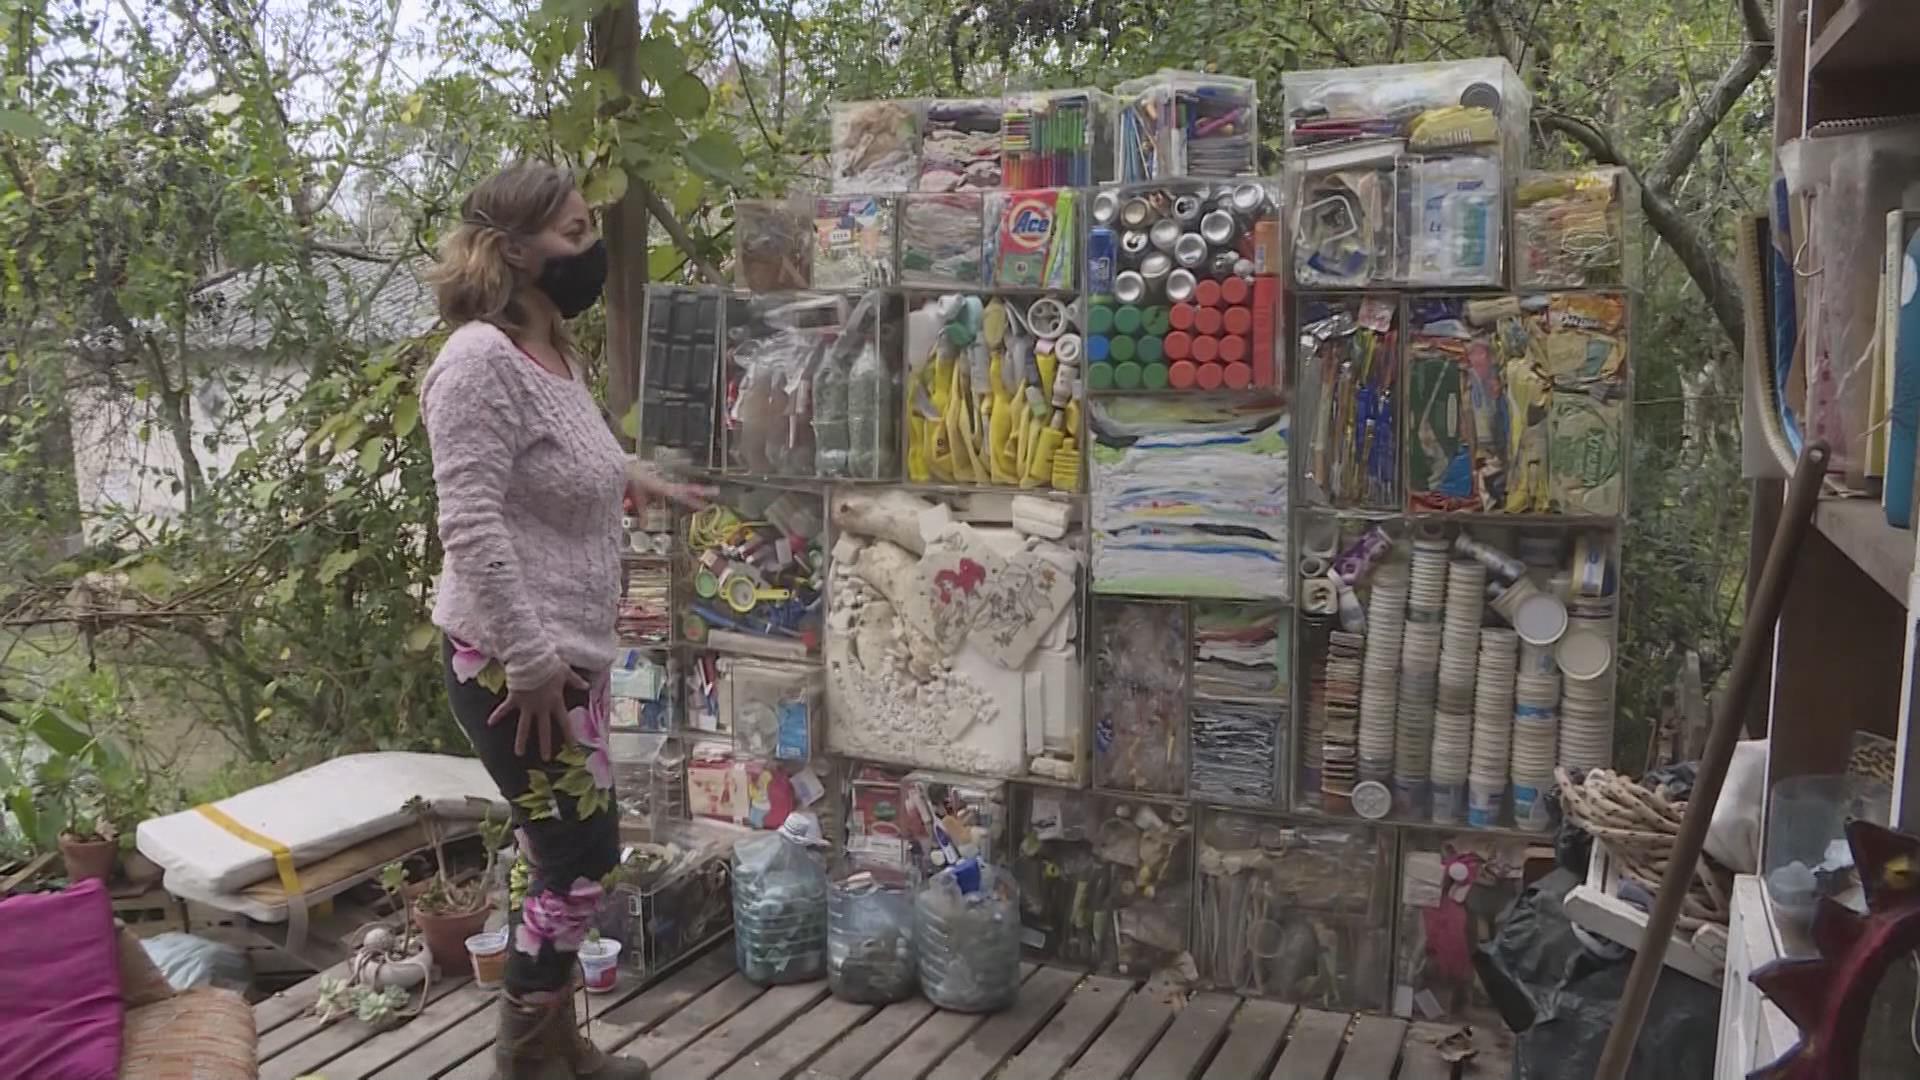 "Residuoteca" en Argentina, un proyecto personal que se expande y genera conciencia ambiental